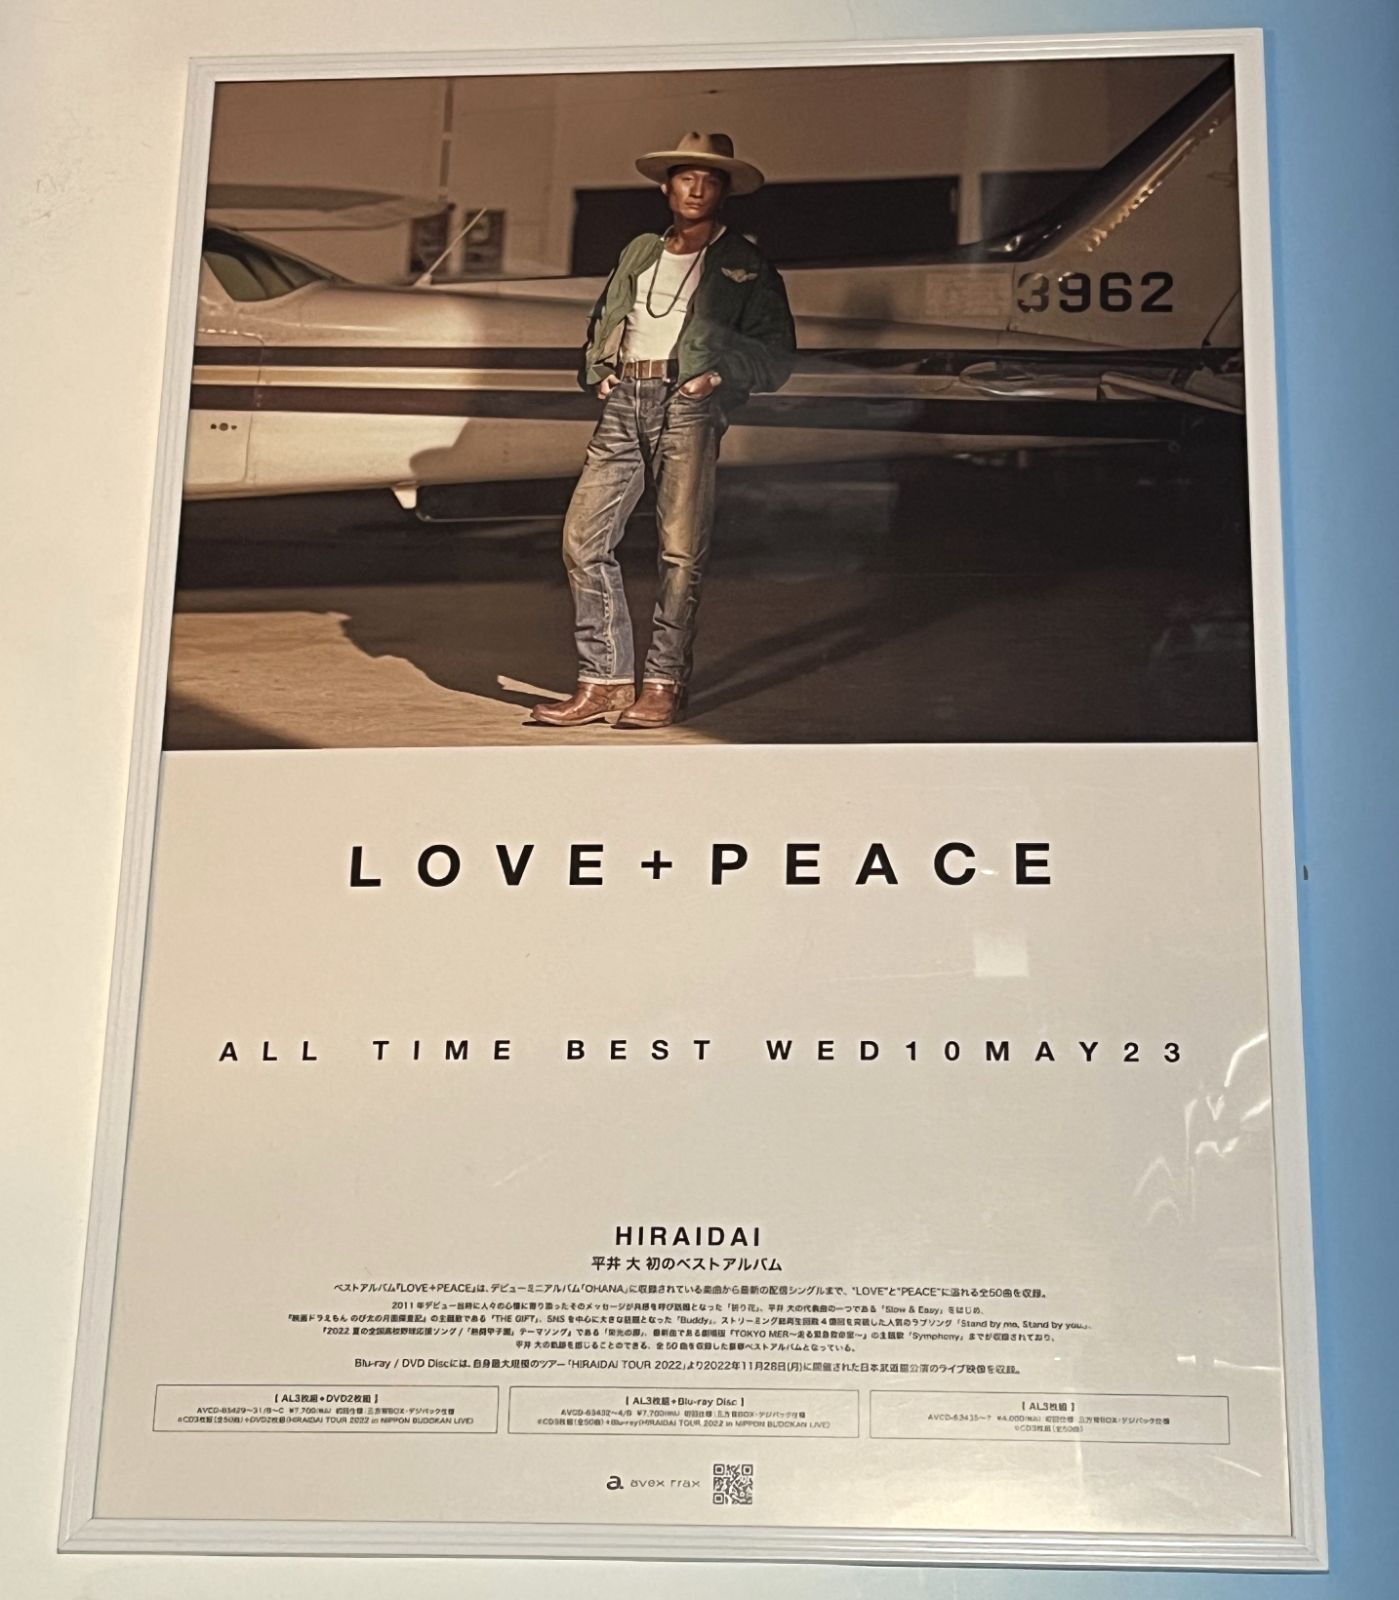 LOVE + PEACE 平井大 販売用告知B2ポスター - メルカリShops